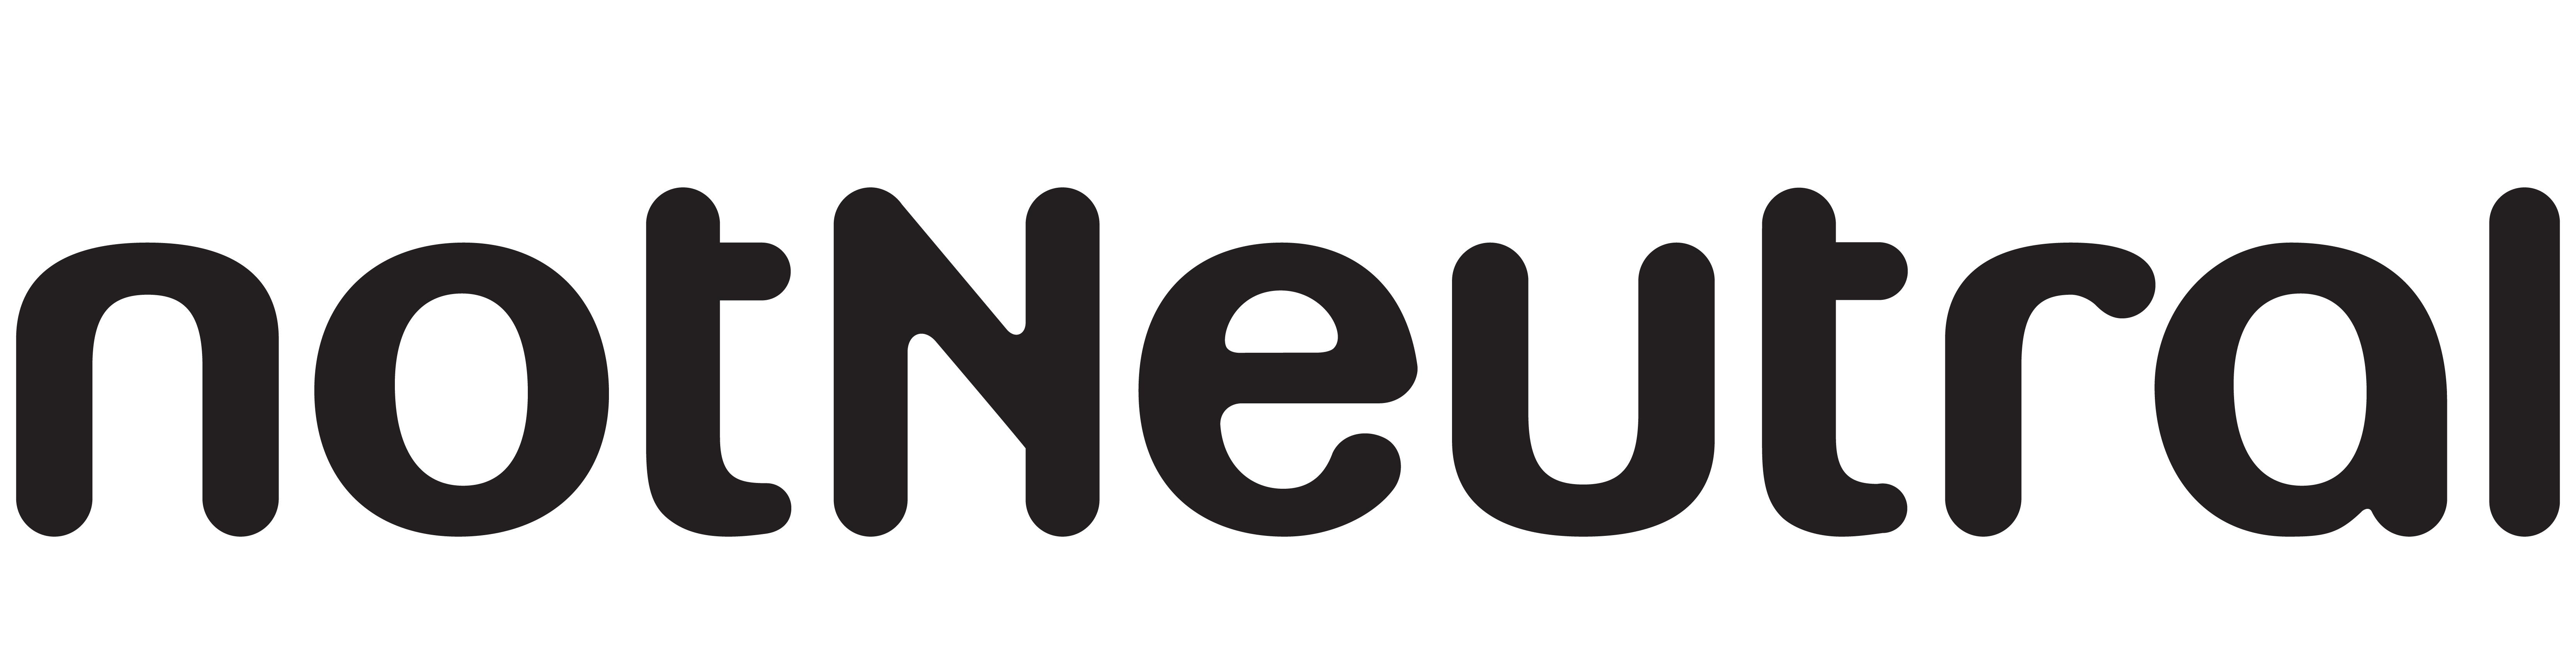 notNeutral previous logo